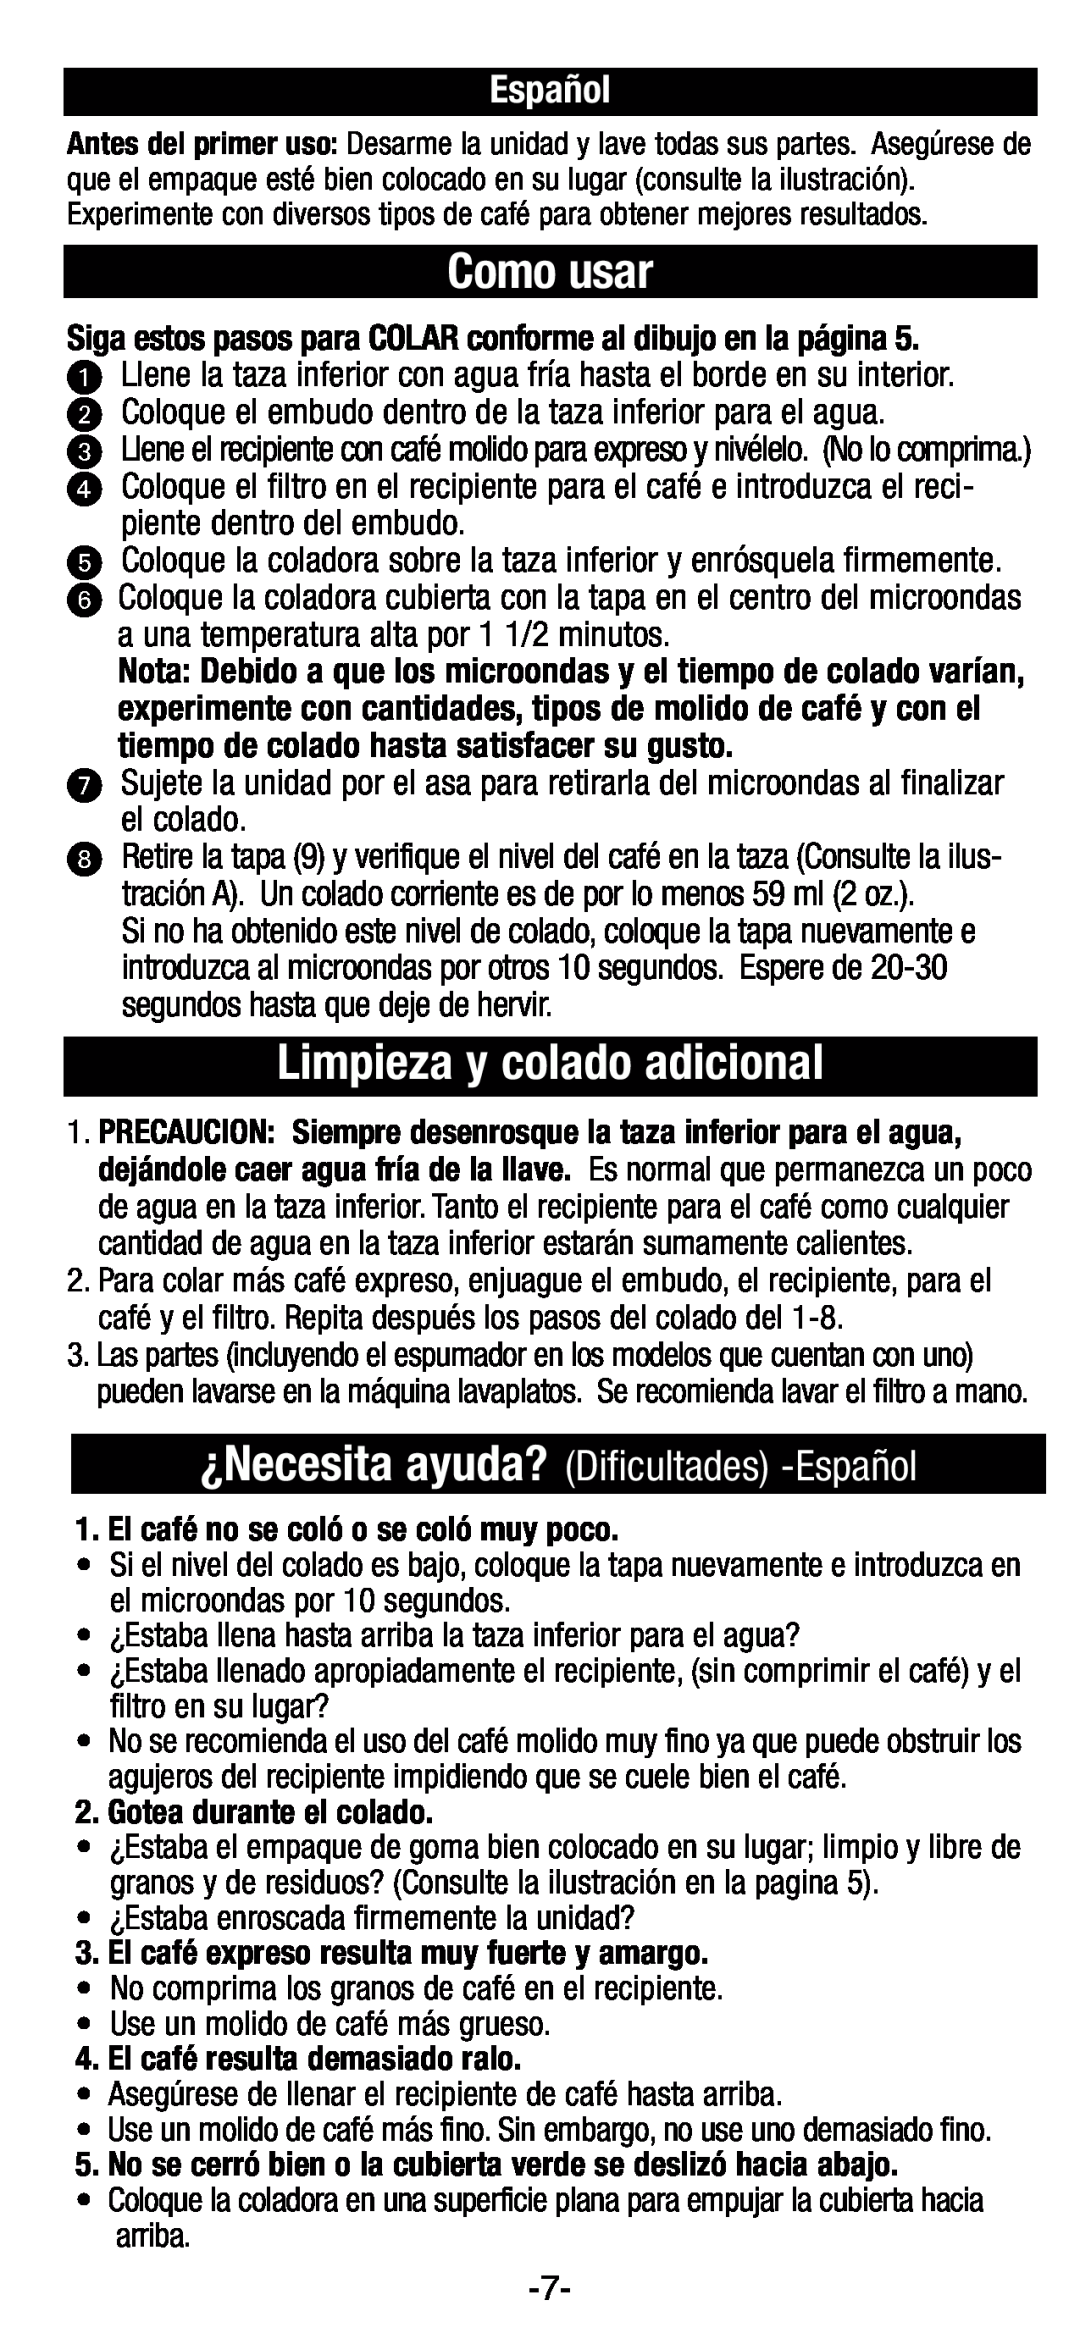 Black & Decker EE200, EE100 manual Como usar, Limpieza y colado adicional, ¿Necesita ayuda? Dificultades -Español 